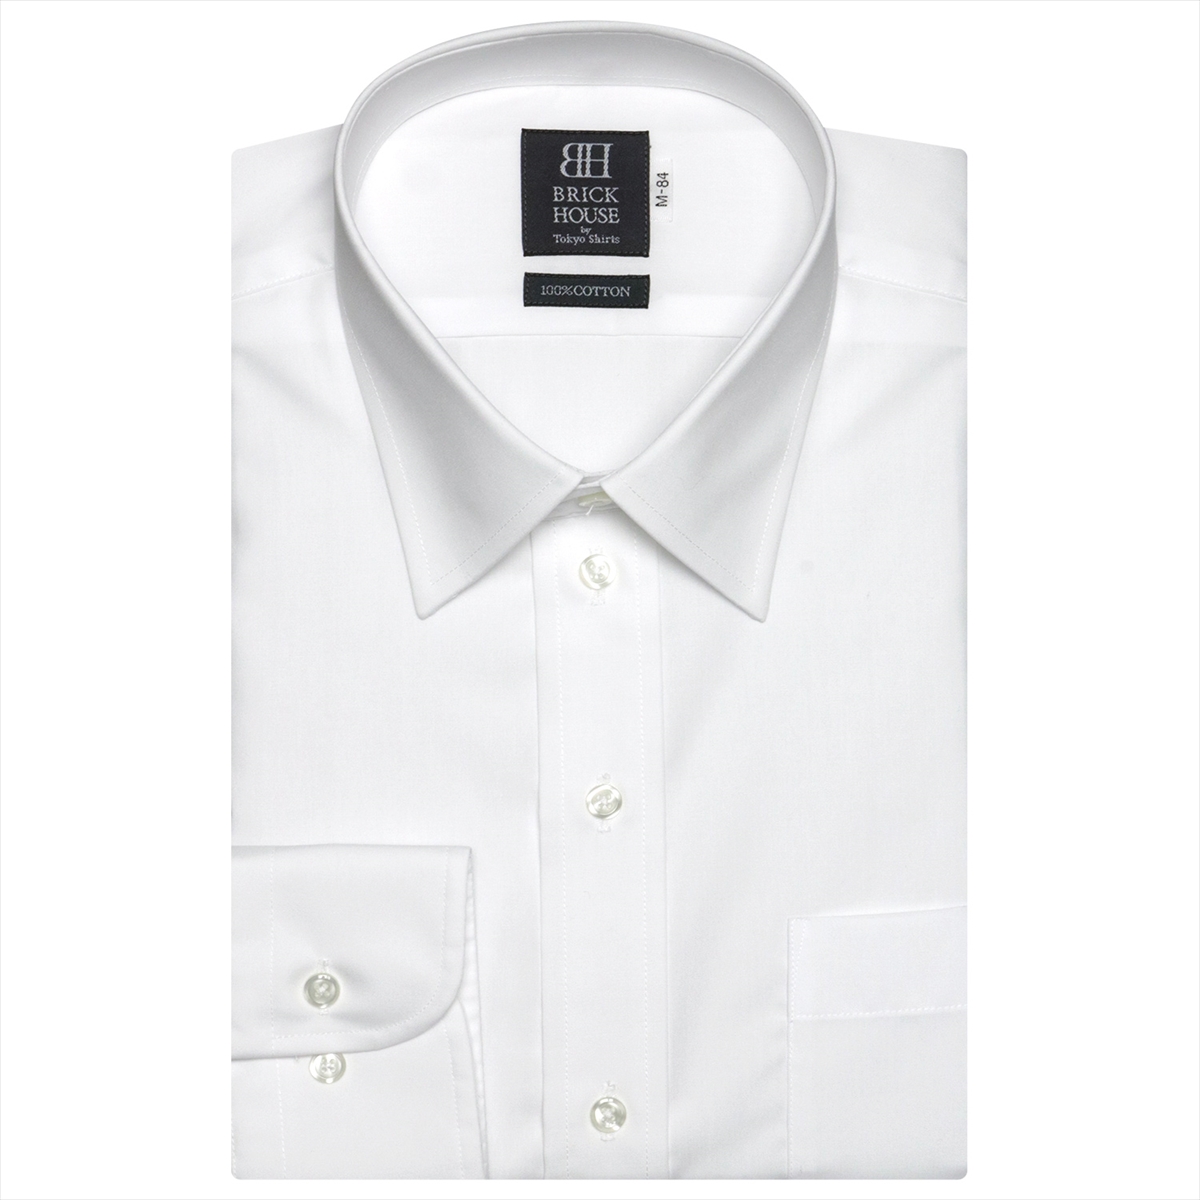 ワイシャツ シャツ工房 東京シャツ BRICK 期間限定送料無料 HOUSE ブリックハウス 綿100% 形態安定 レギュラー フォーマル 長袖 ビジネス 人気の定番